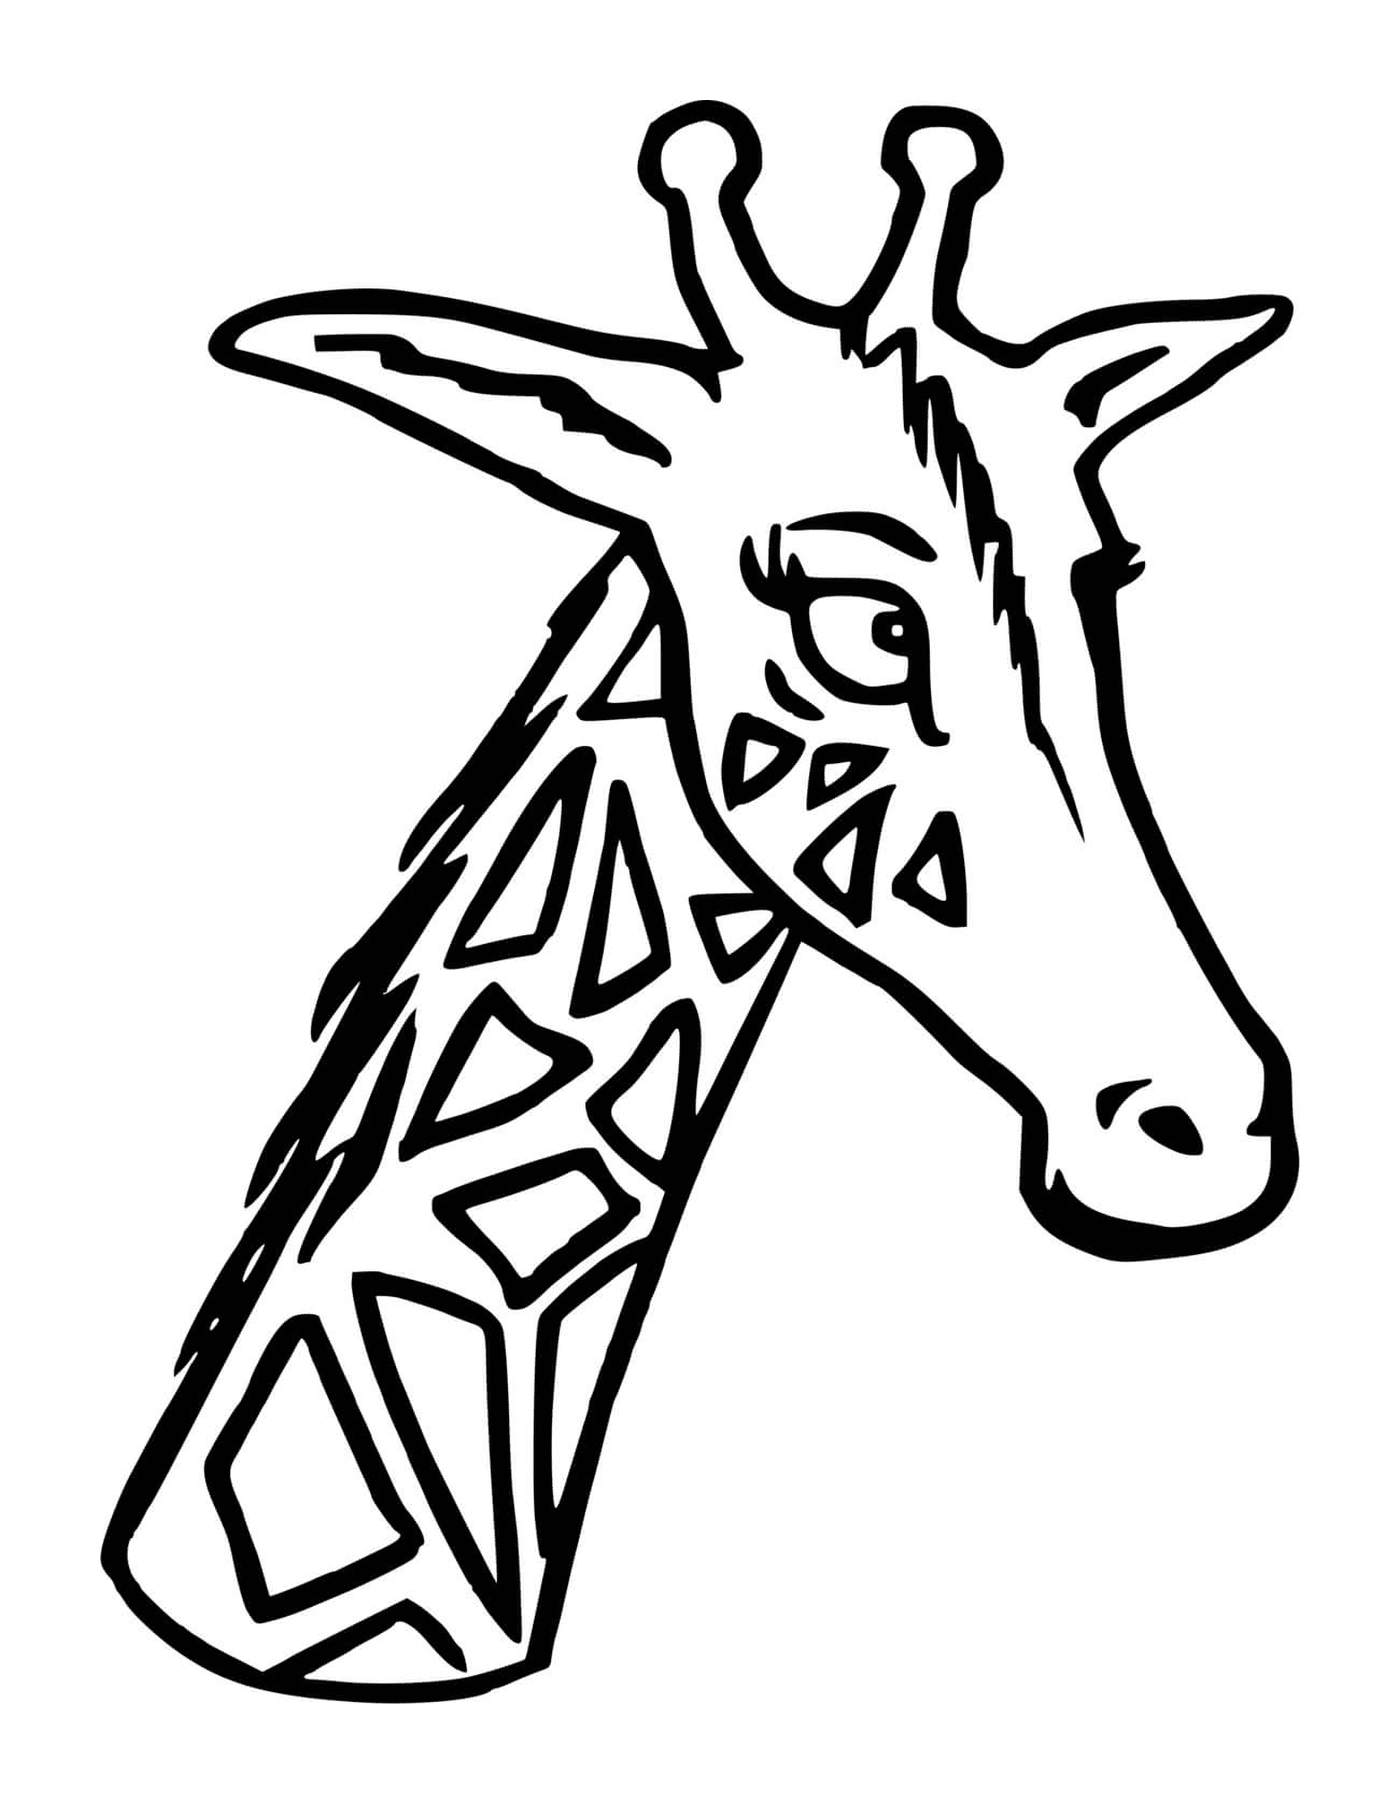  Eine Giraffe mit ihrem langen Kopf und Hals 